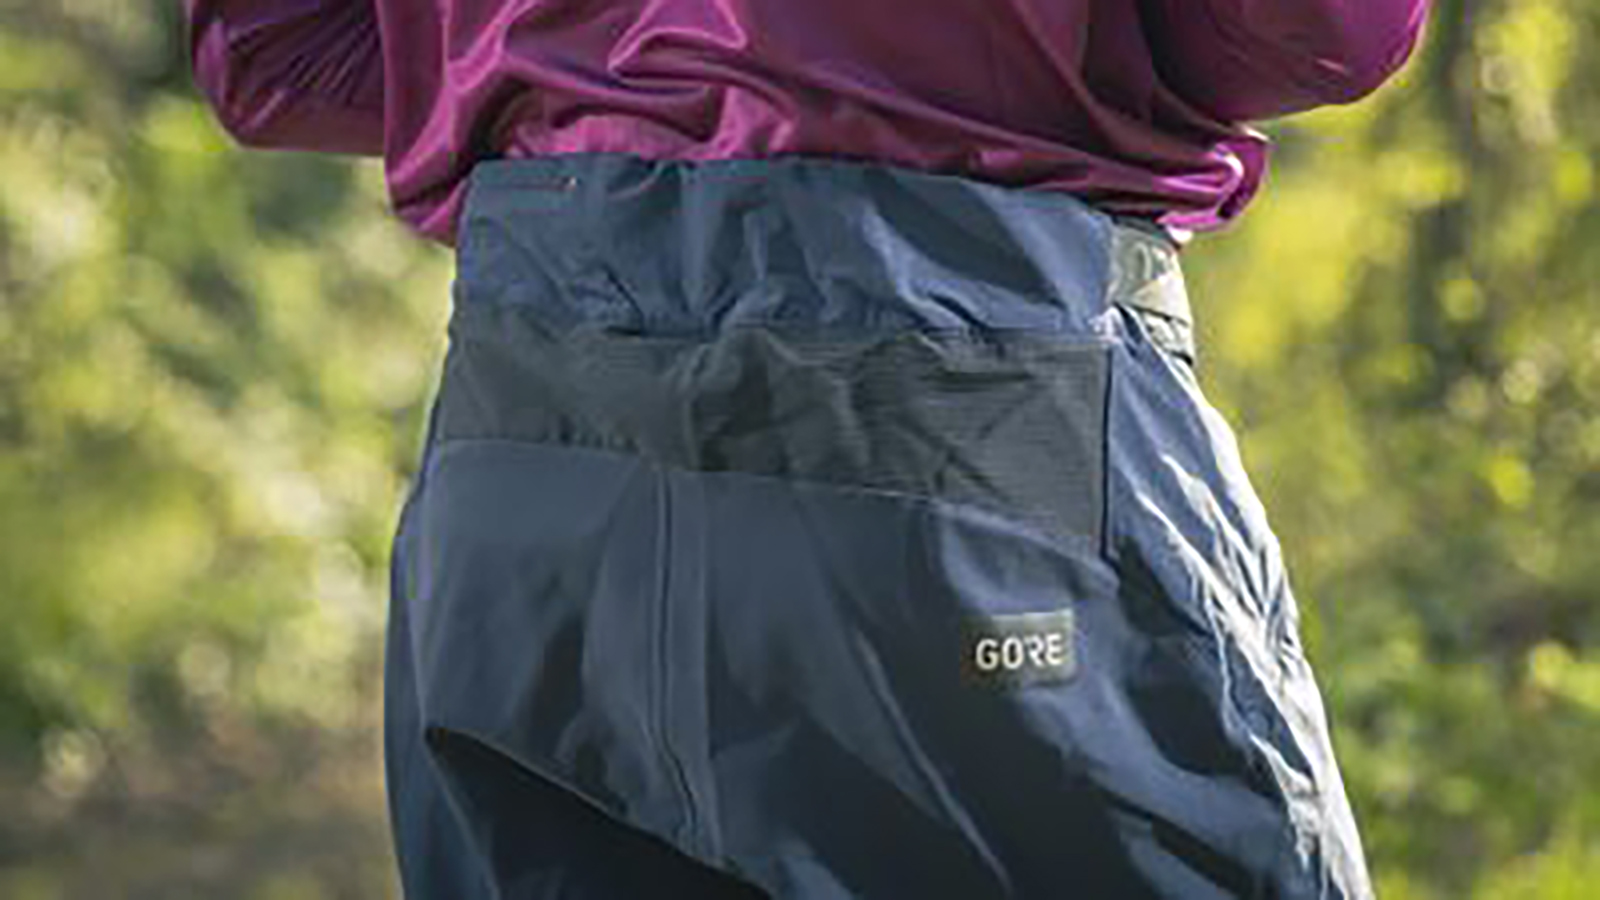 Gorewear Fernflow Shorts review – lightweight yet…